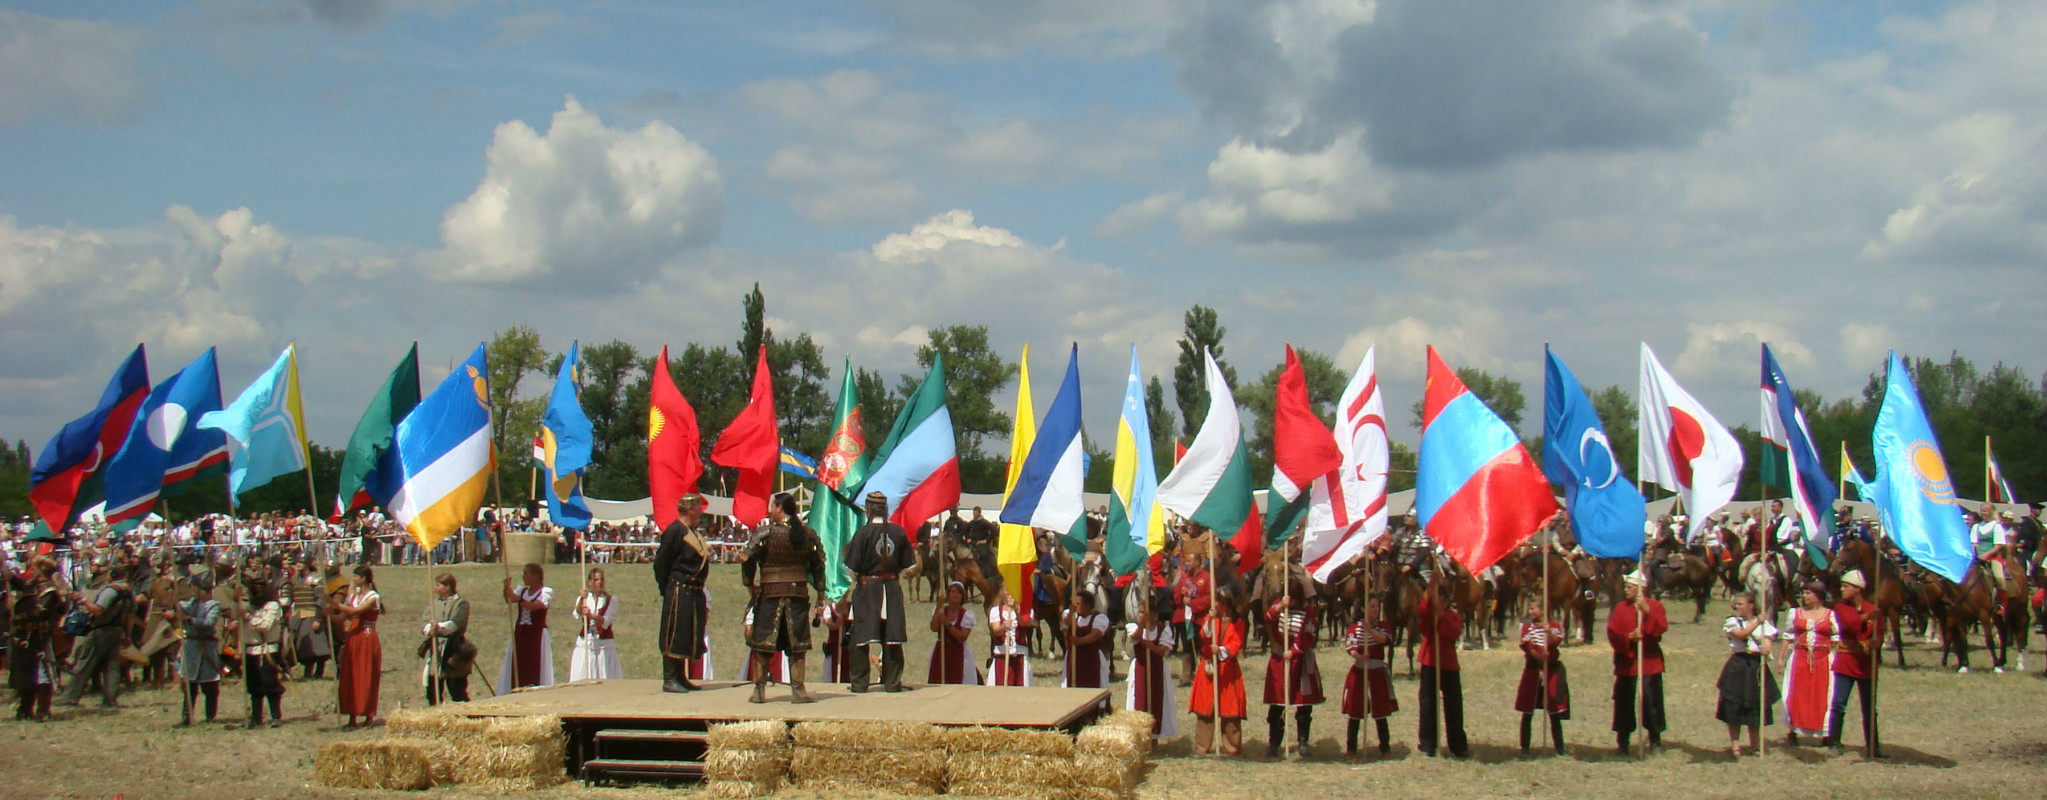 В Турции возродят Фонтан дружбы тюркских народов